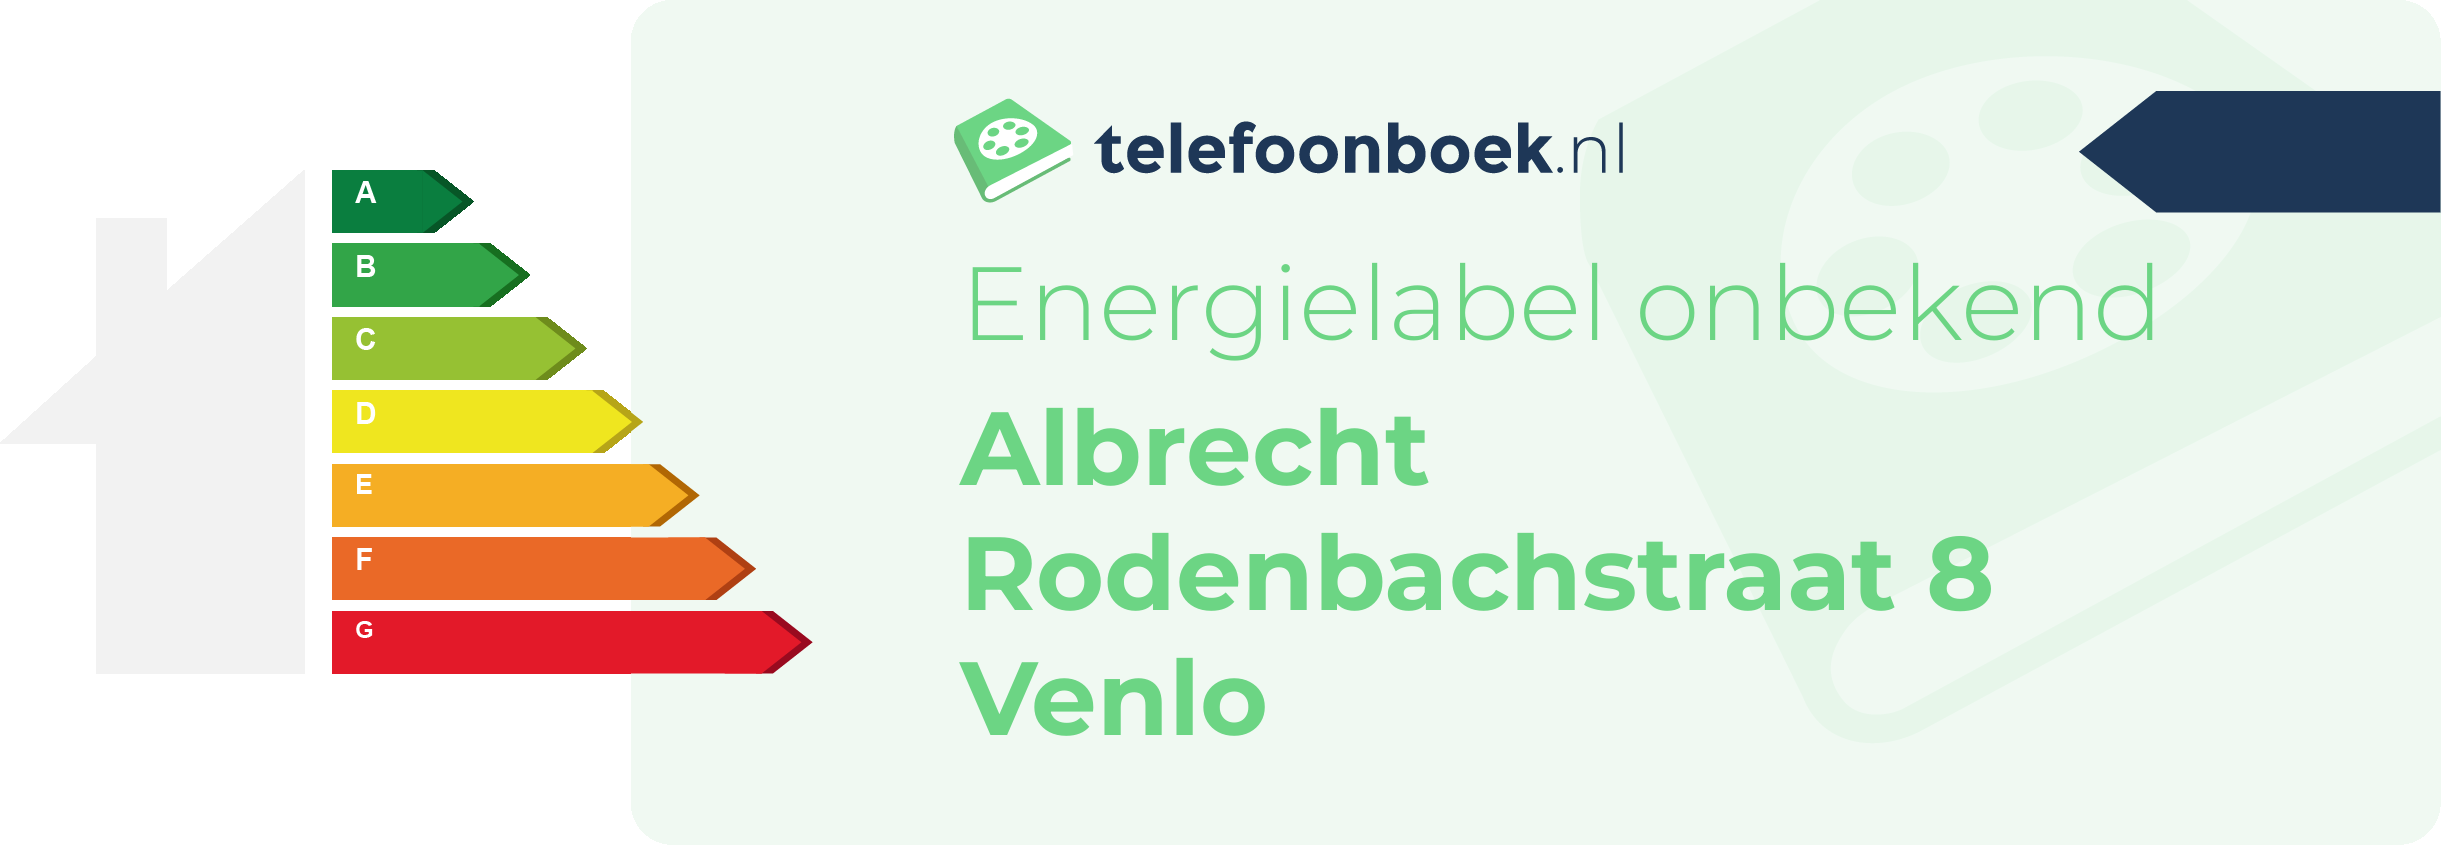 Energielabel Albrecht Rodenbachstraat 8 Venlo